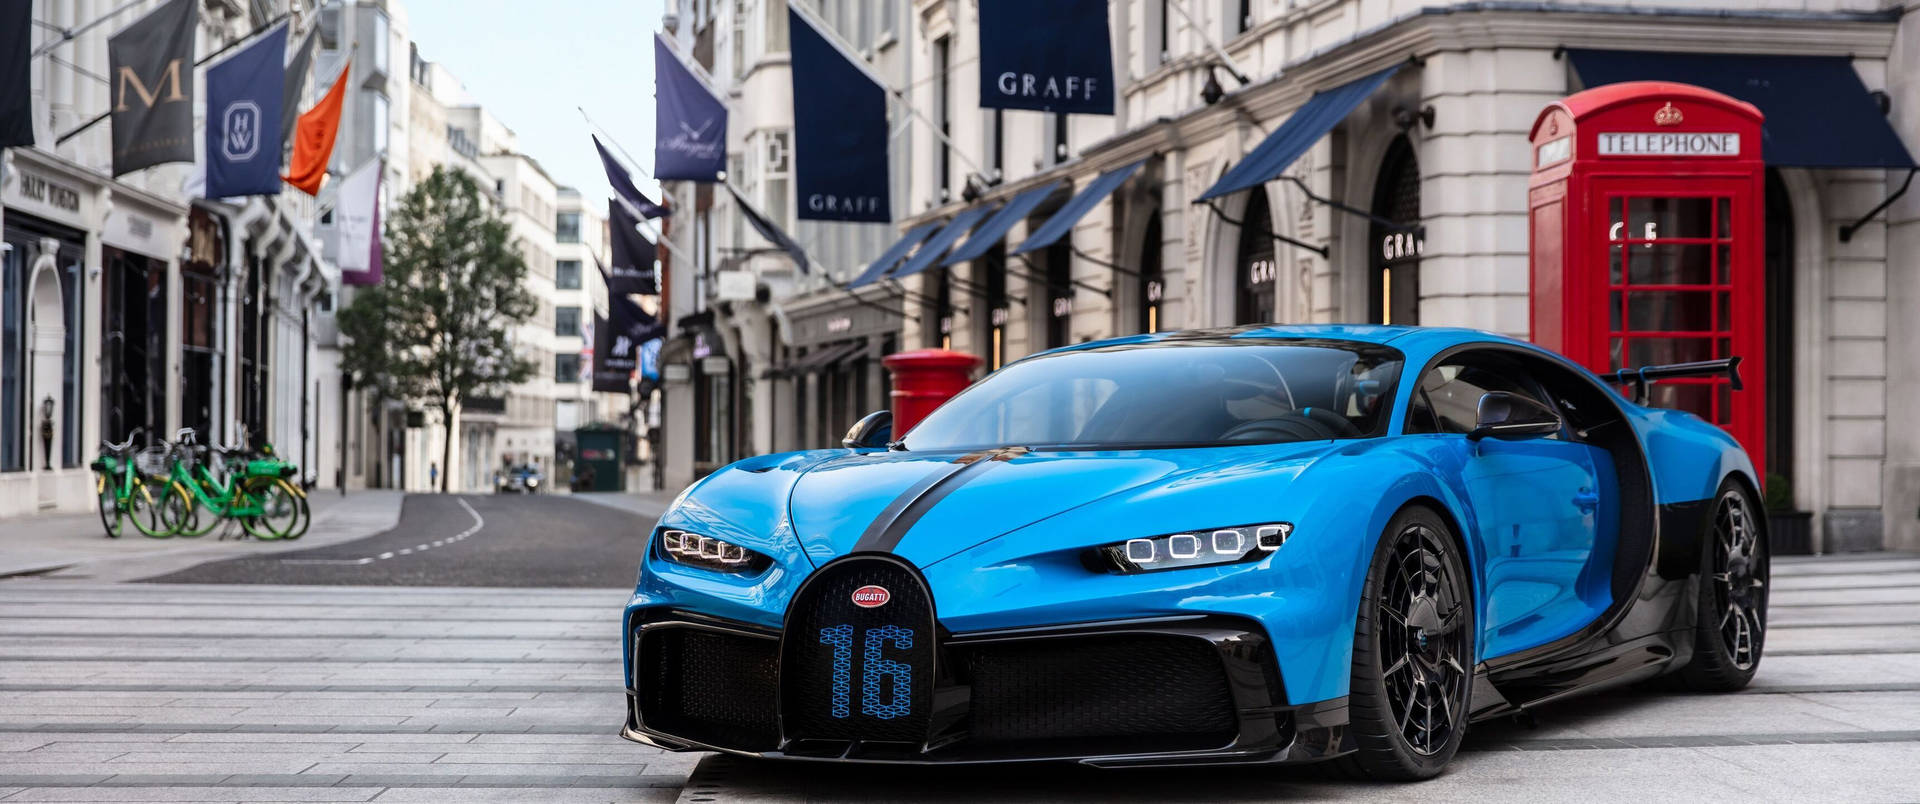 3440x1440 Car Bugatti Chiron Sport Coupe Mekka-blå baggrundsbillede Wallpaper